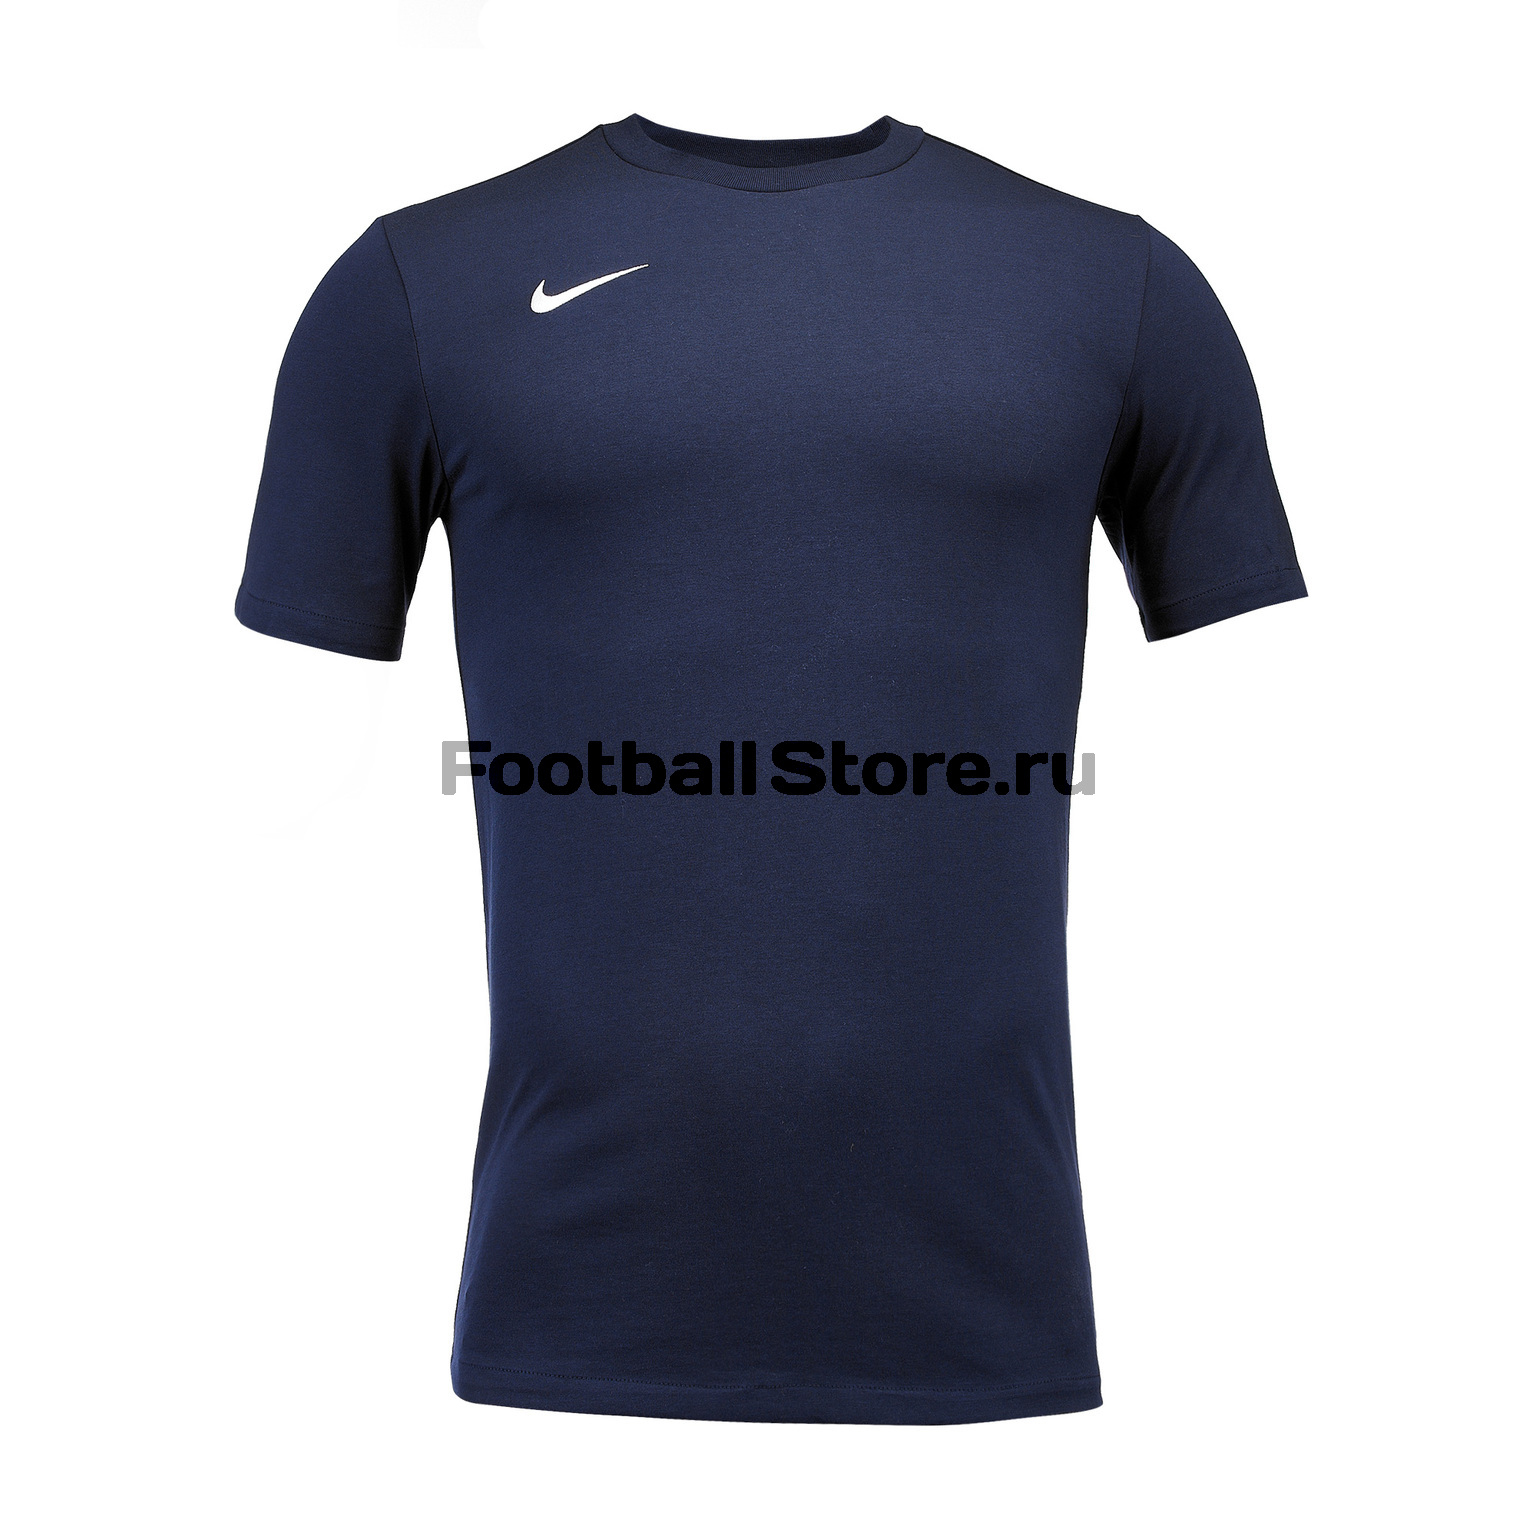 Футболка хлопковая Nike Tee Club19 SS AJ1504-451